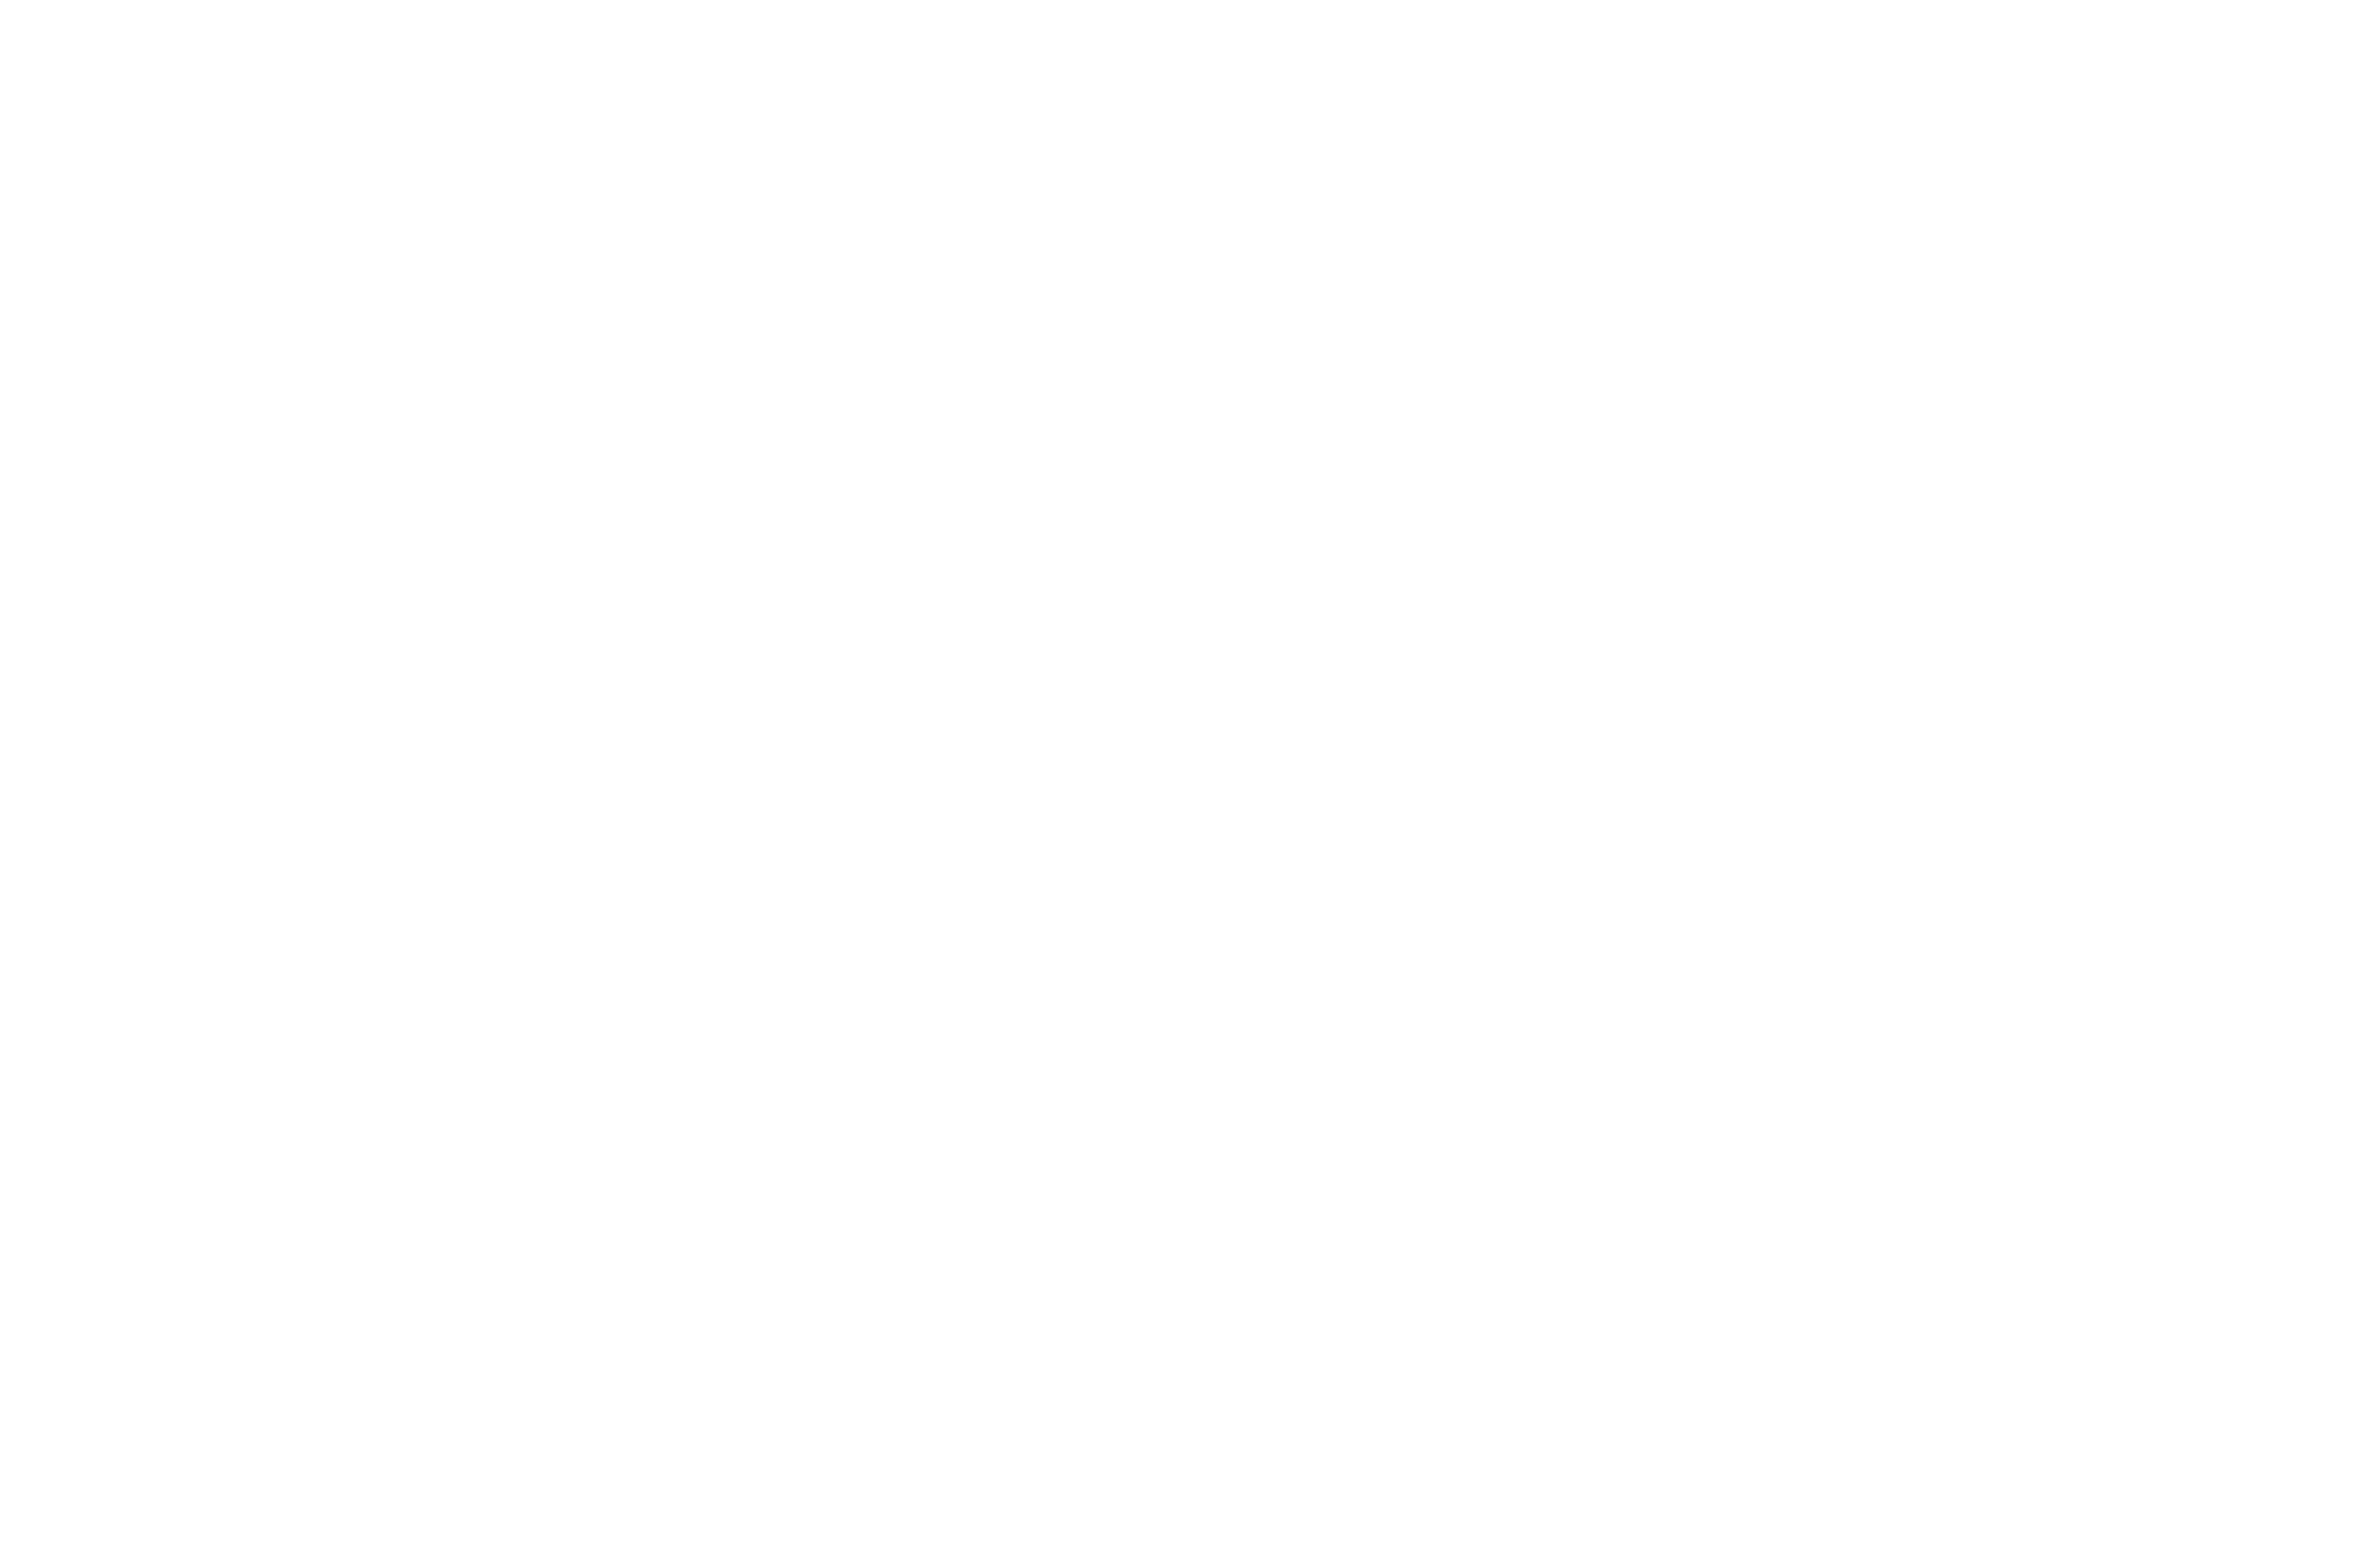 CAETANO REAL ESTATE - Guia Imobiliário